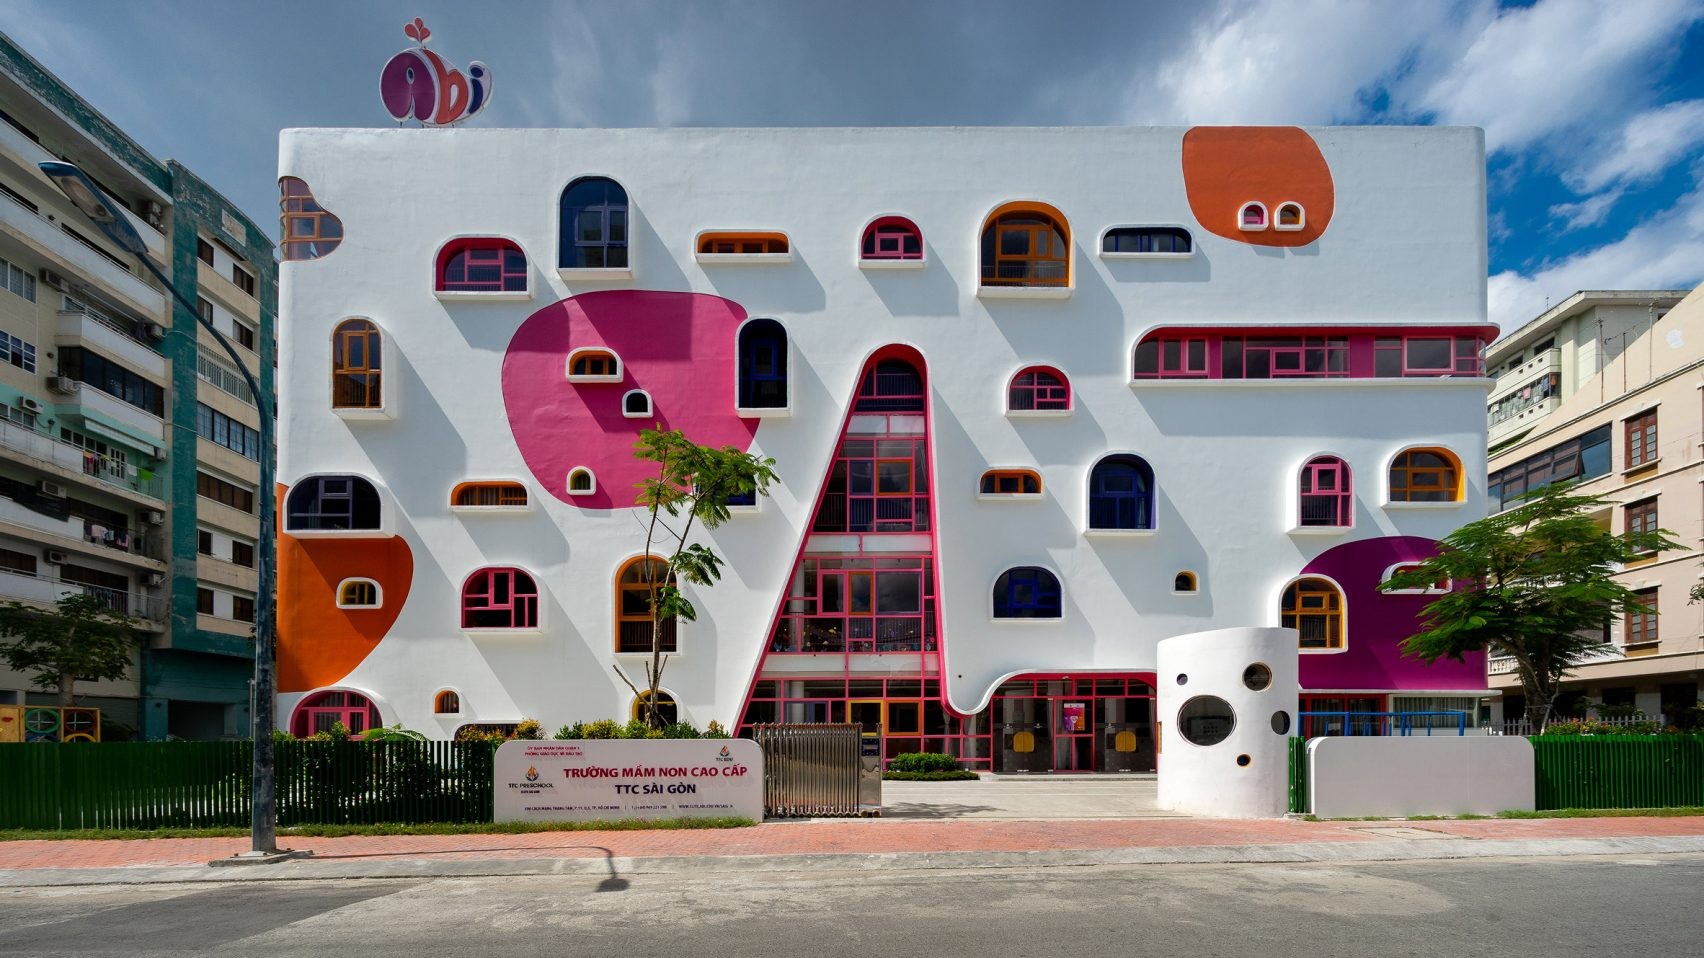 Escola com fachada colorida se destaca na paisagem vietnamita (Foto: Divulgação)